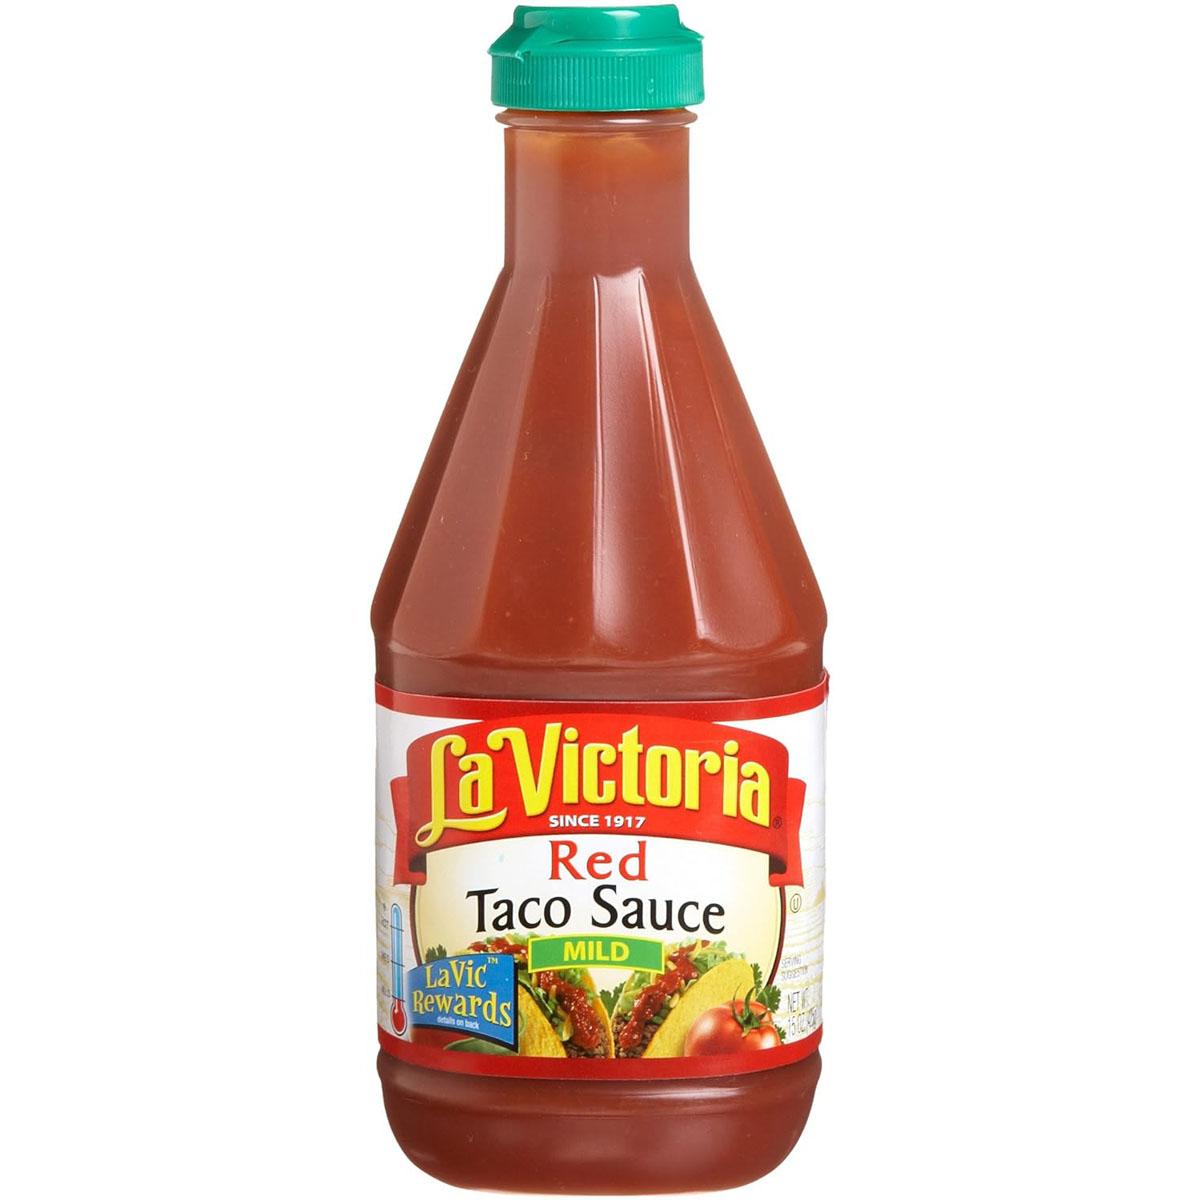 La Victoria Red Taco Sauce for $1.69